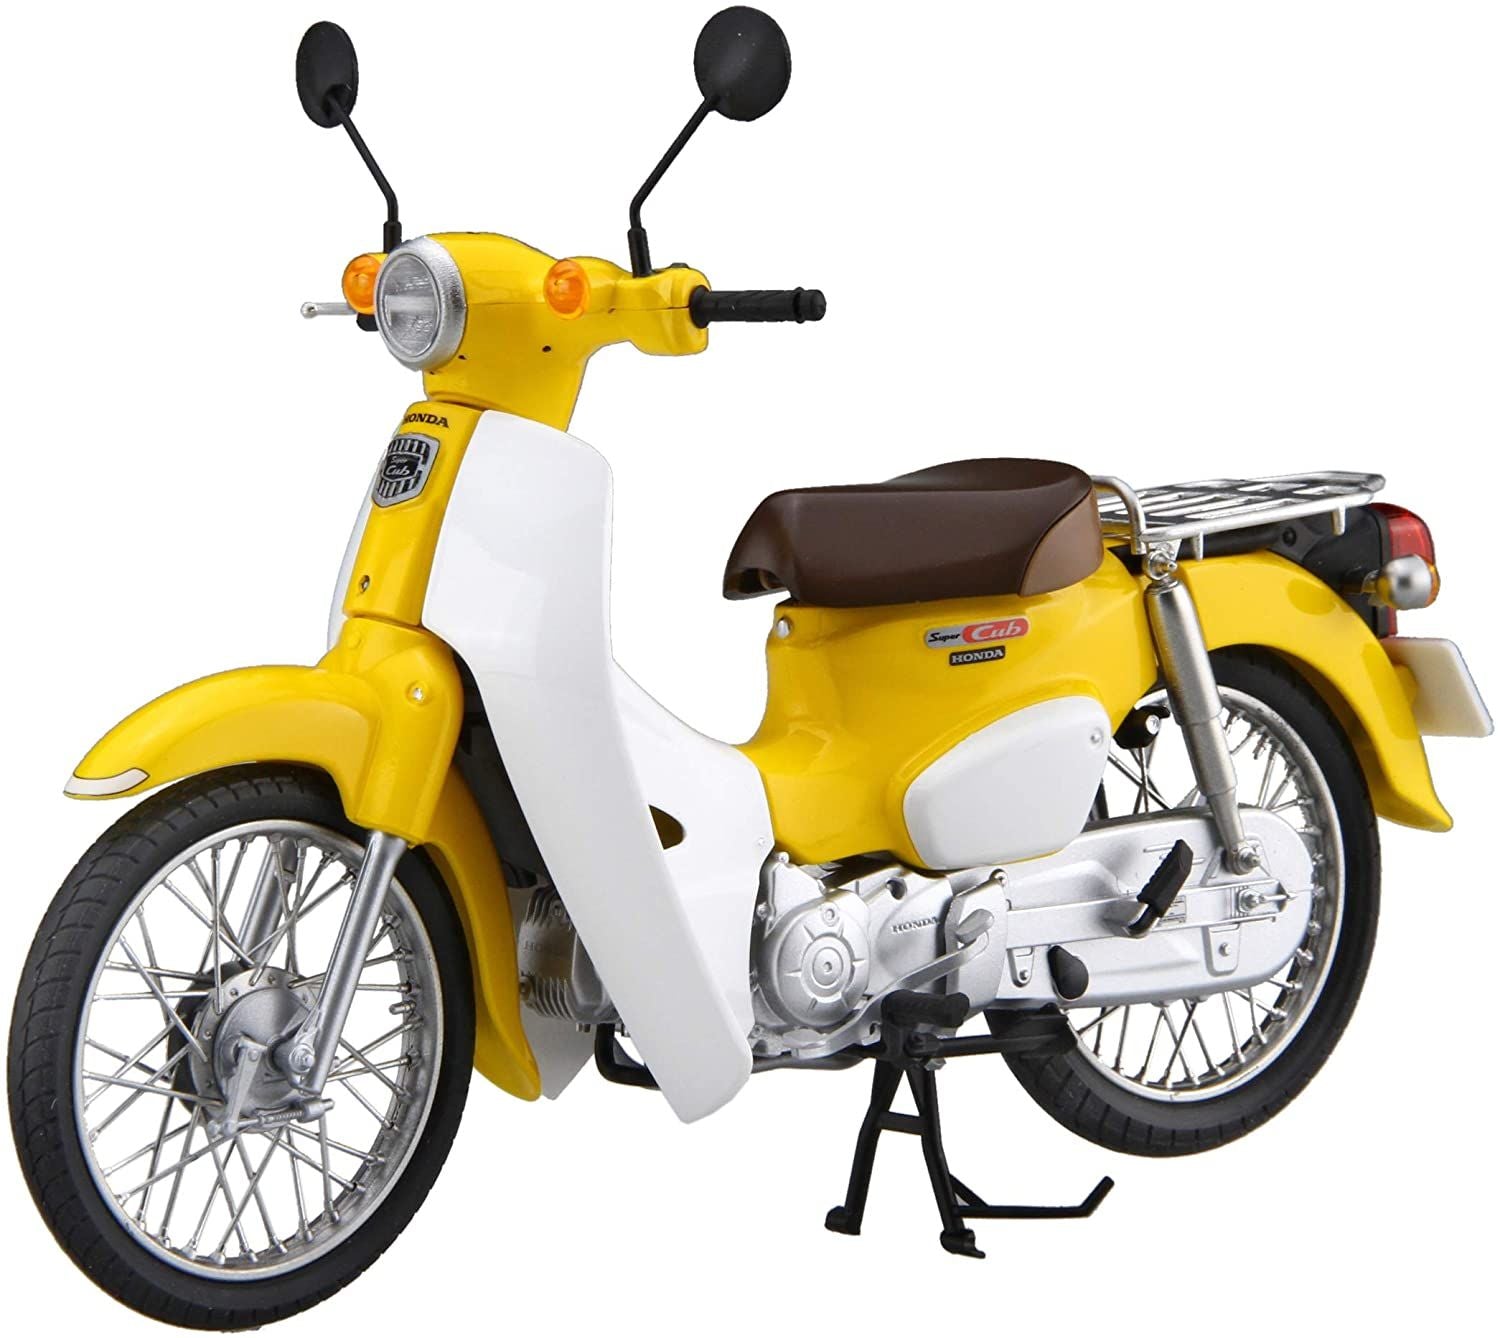 Fujimi Honda Super Cub110 (Pearl Flash Yellow) - BanzaiHobby